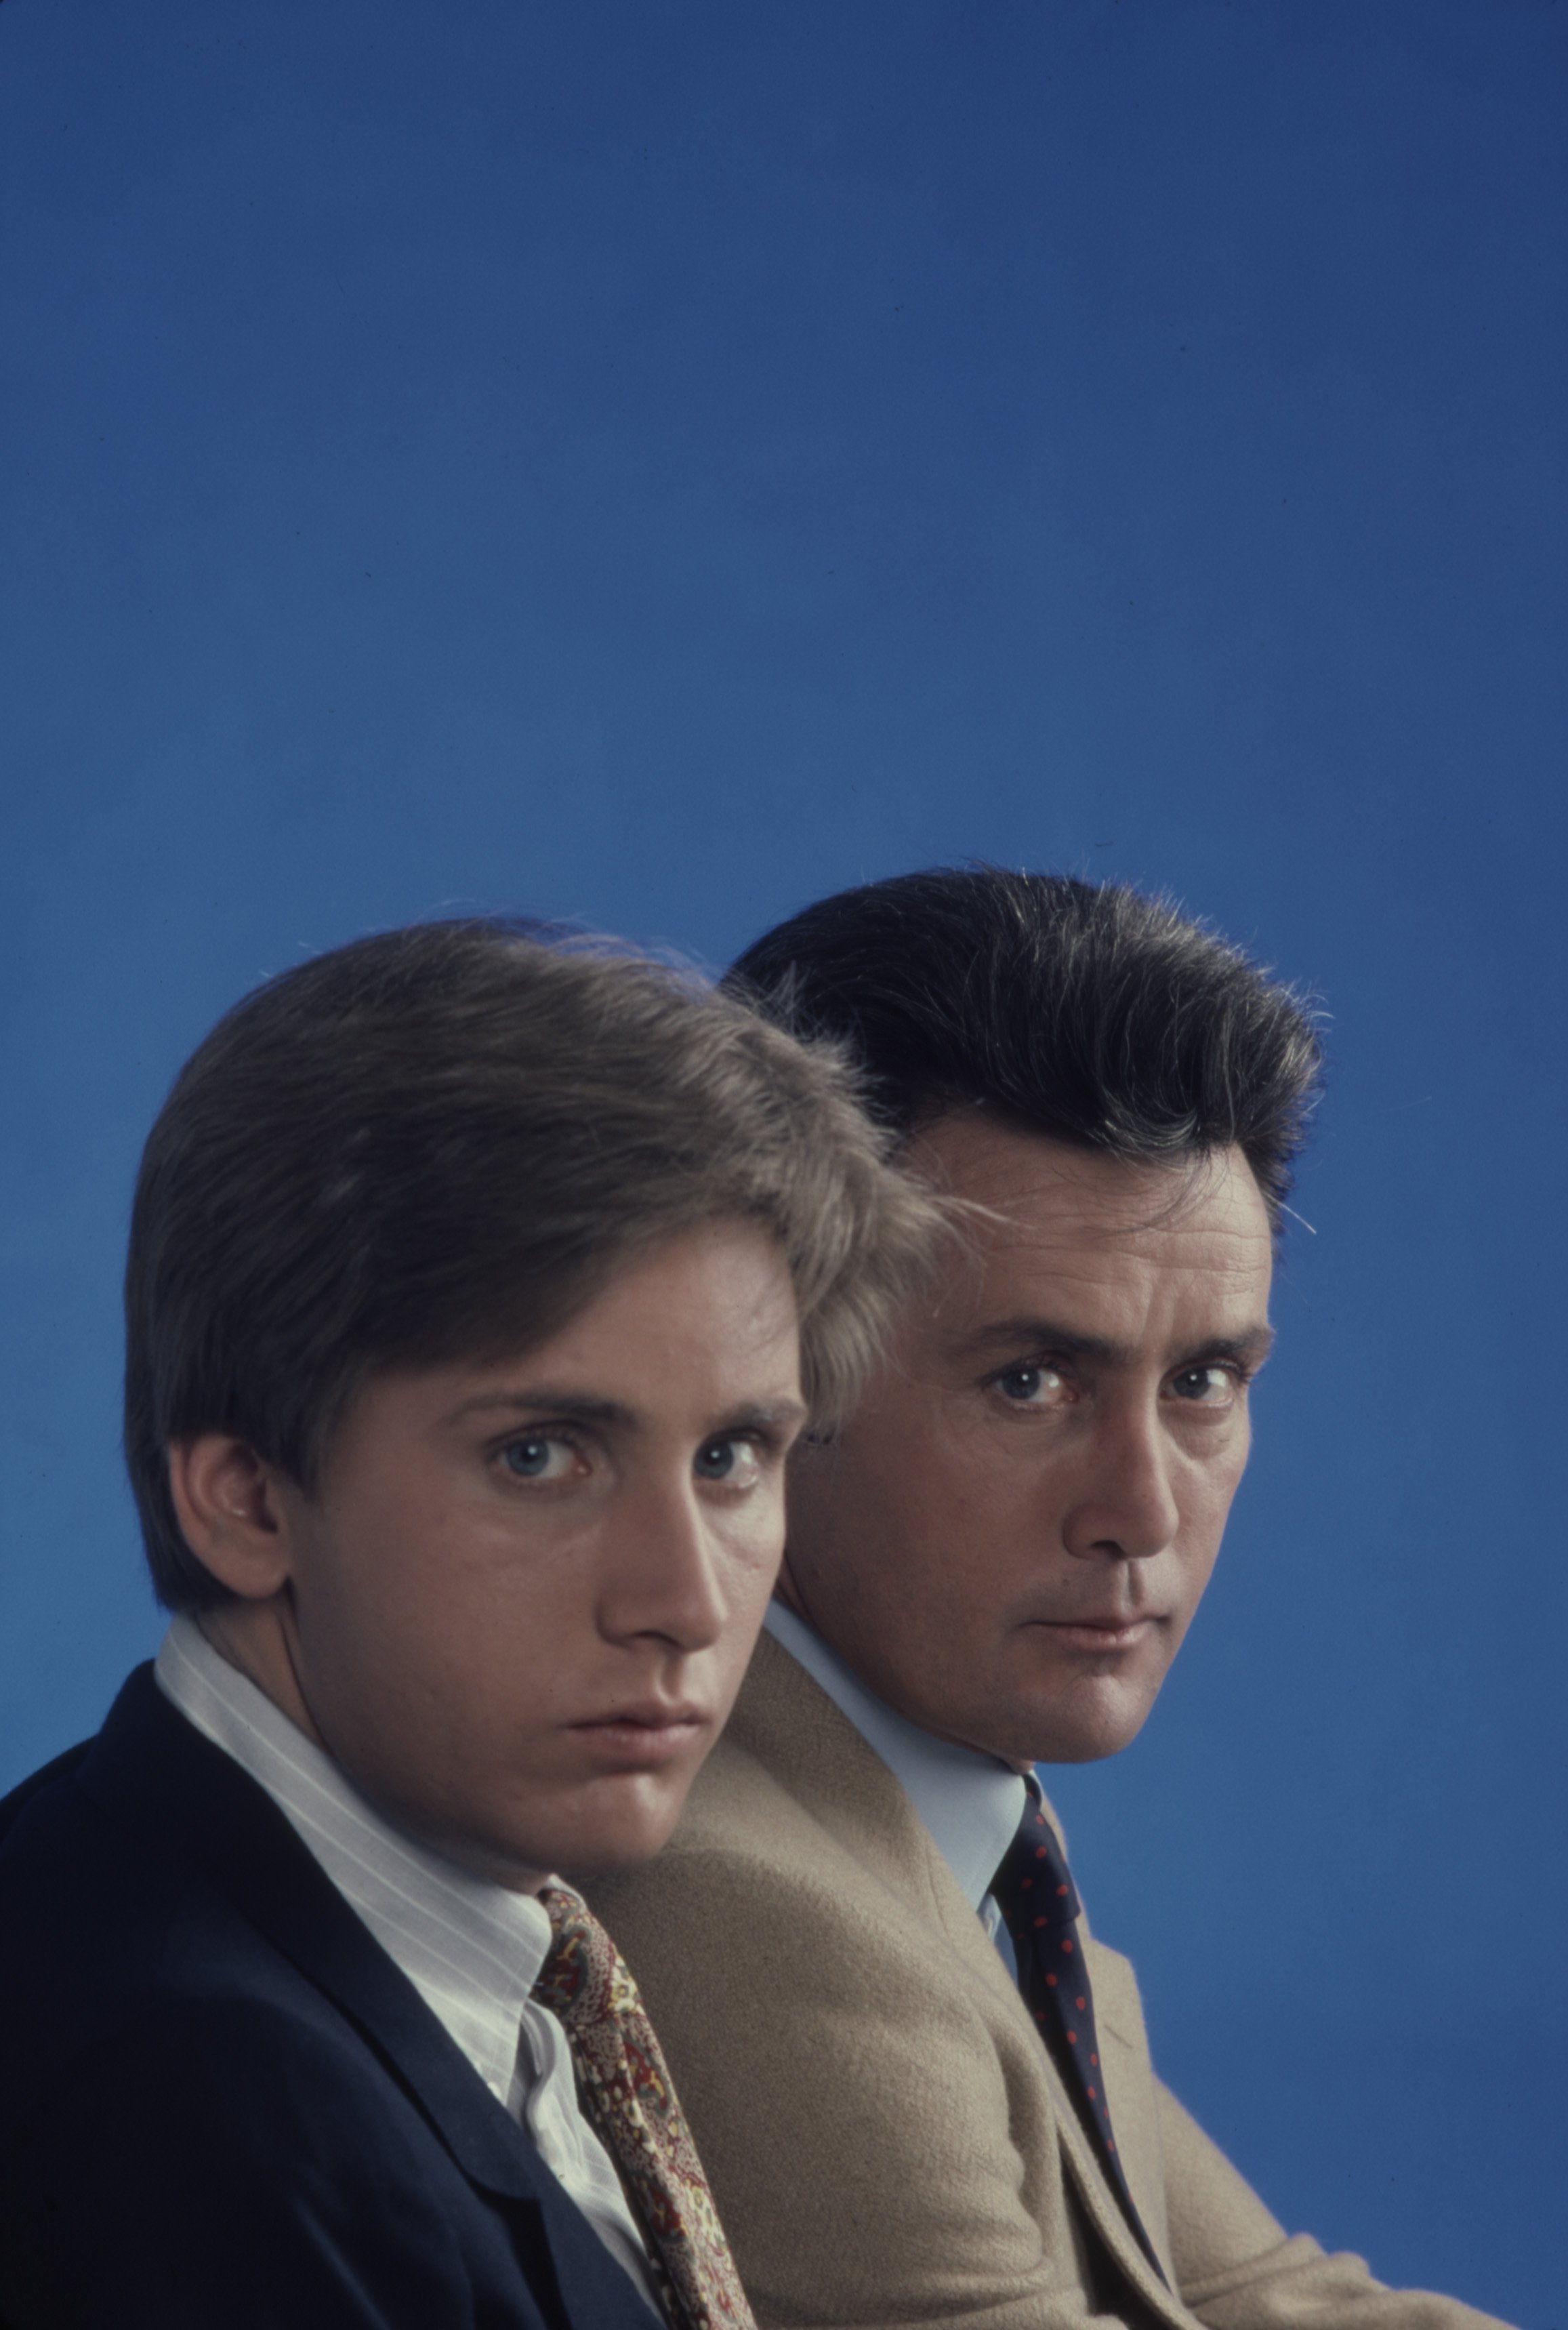 Emilio Estévez y Martin Sheen. Foto promocional de la película para televisión de ABC "In the Custody of Strangers", en 1982. | Foto: Getty Images